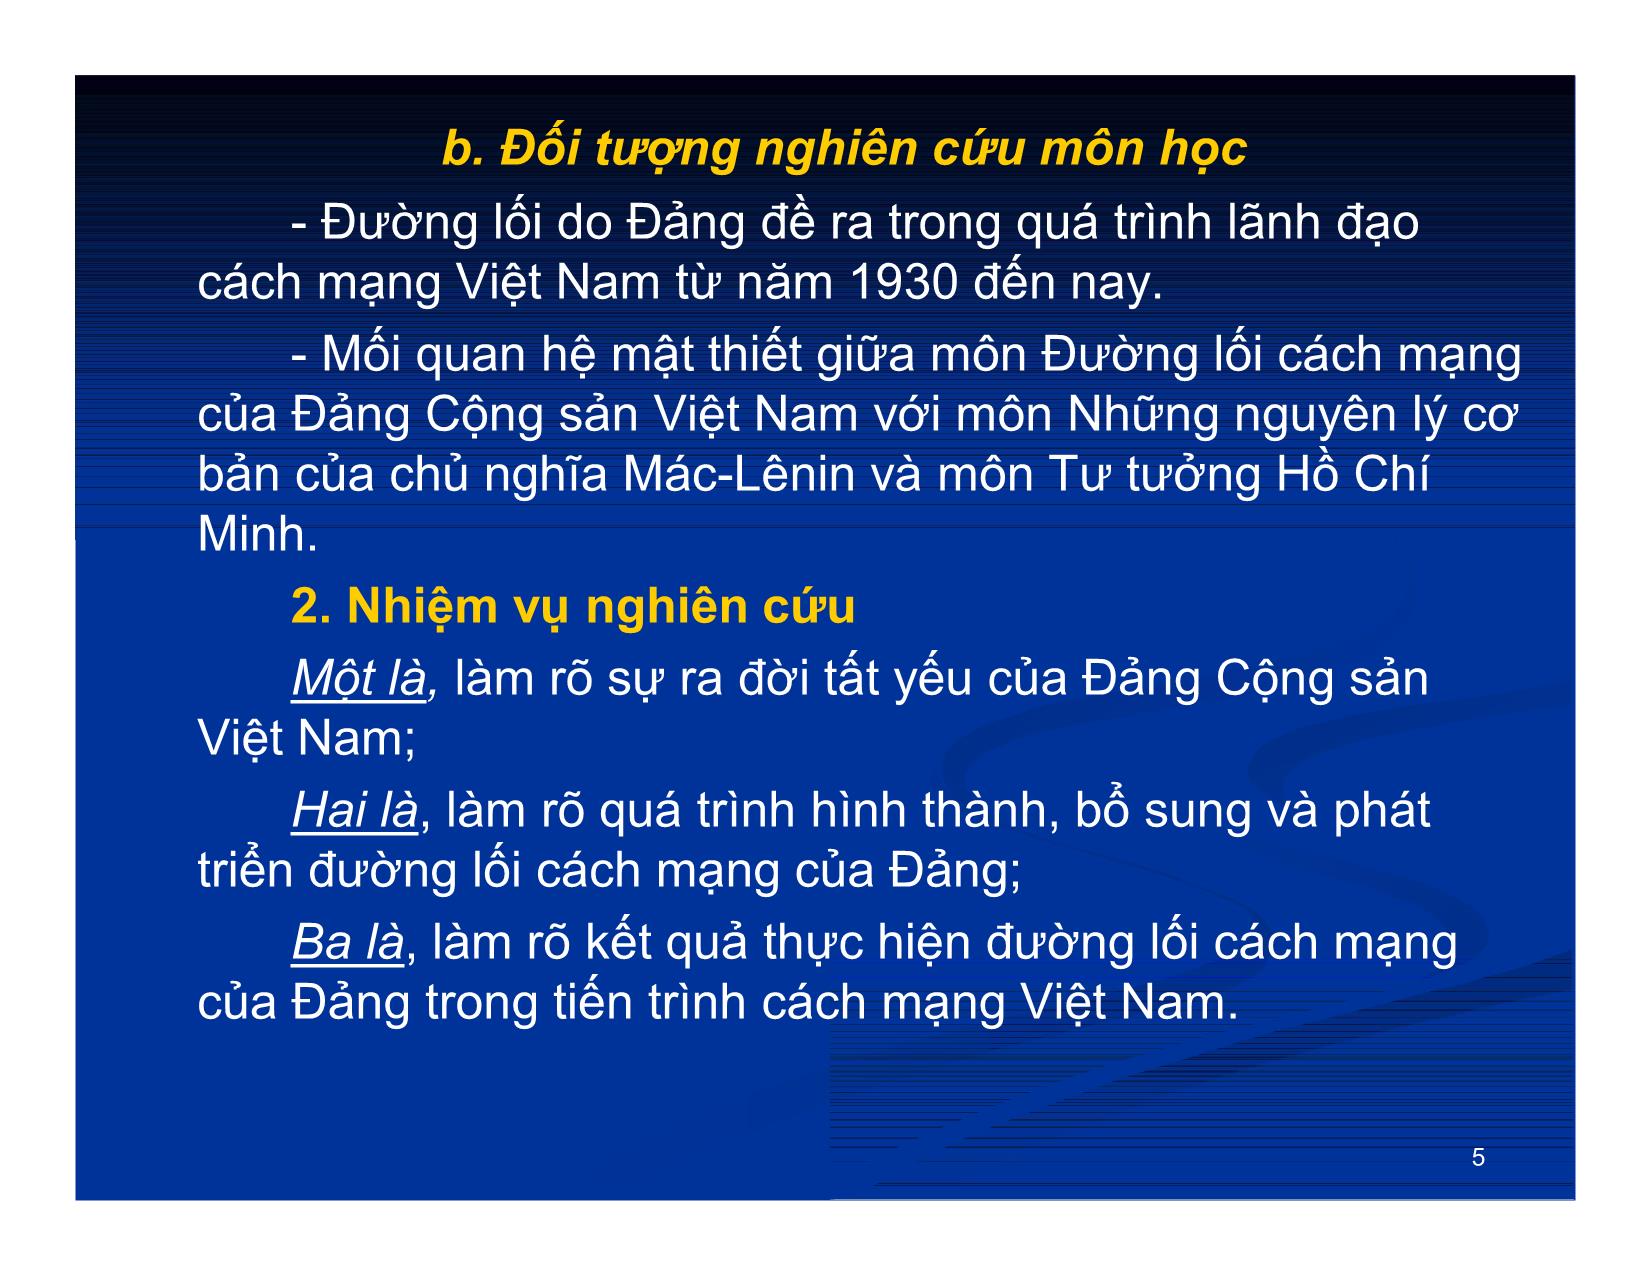 Bài giảng môn Đường lối cách mạng của Đảng cộng sản Việt Nam (Bản hay) trang 5